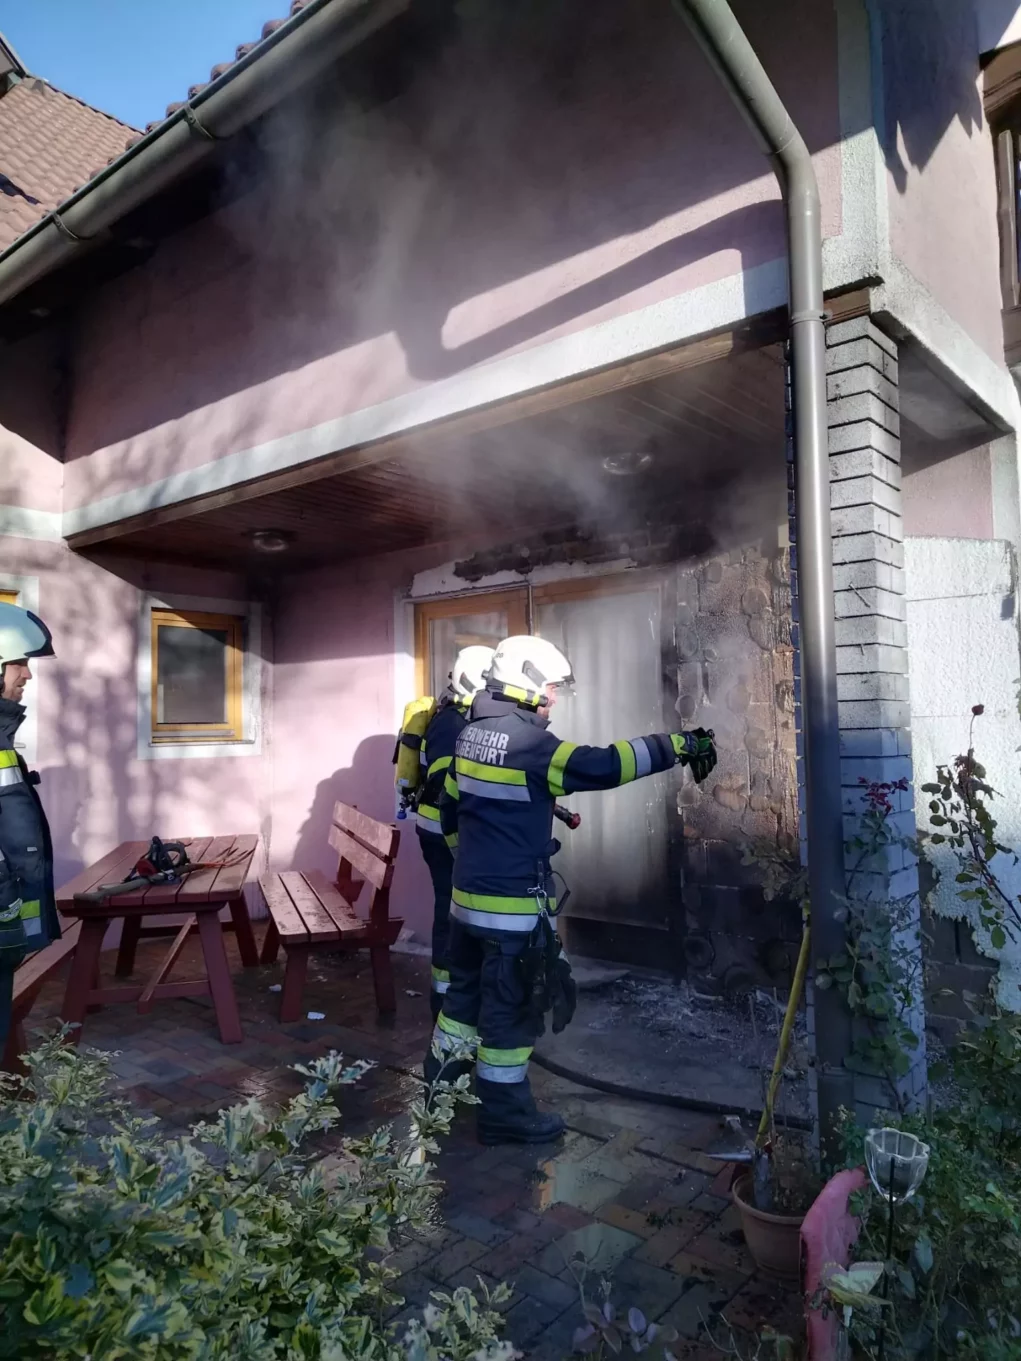 Foto in Beitrag von 5min.at: Zu sehen ist der Feuerwehreinsatz bei einem Hausfassadenbrand.